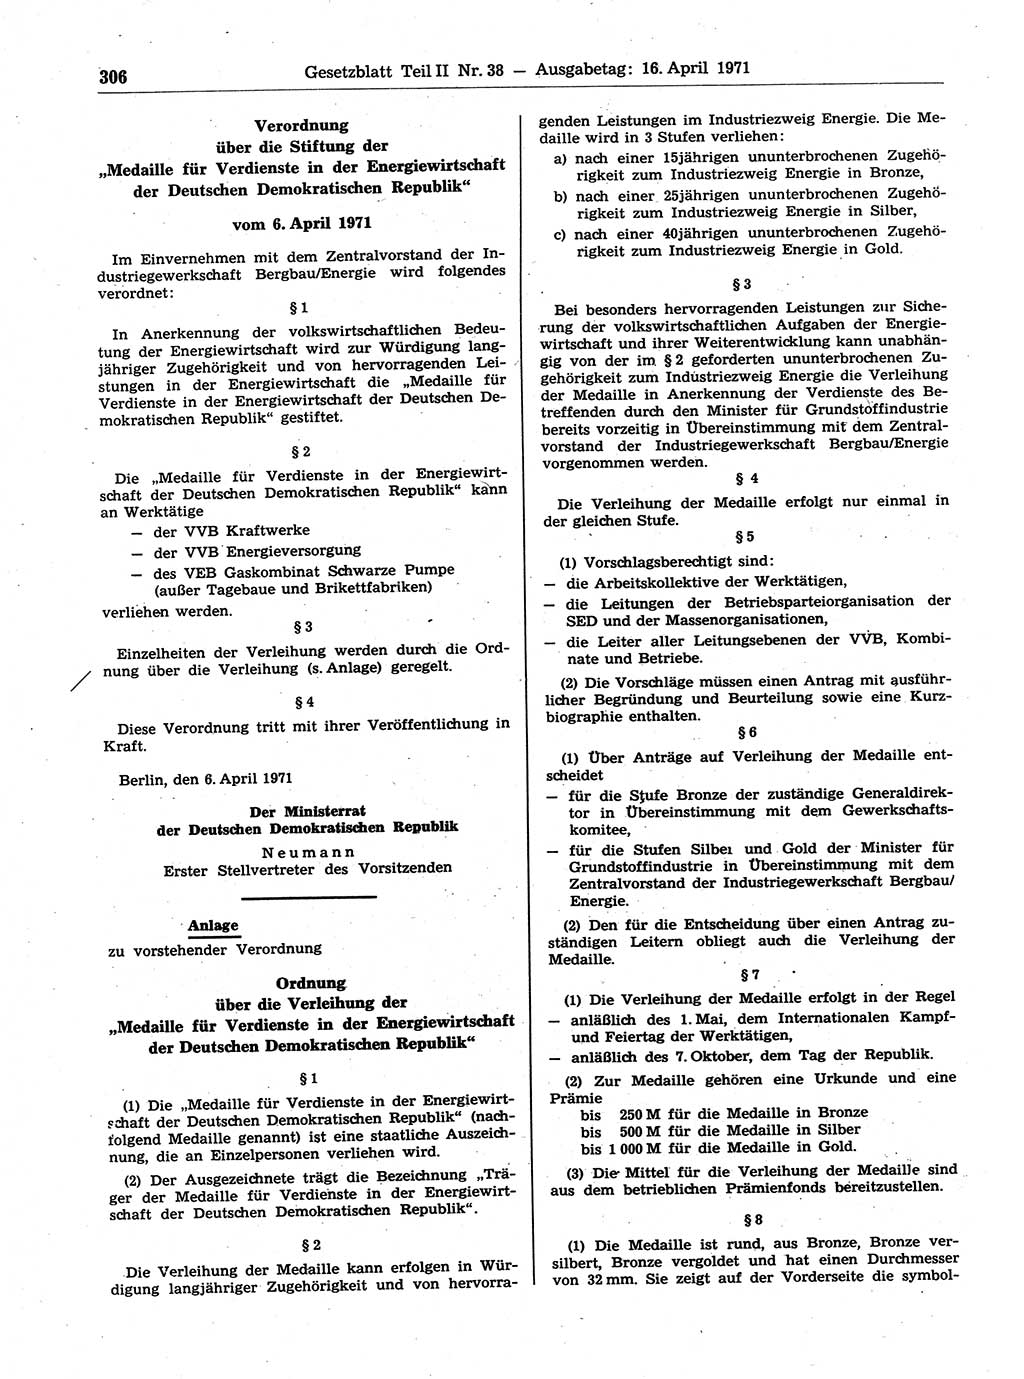 Gesetzblatt (GBl.) der Deutschen Demokratischen Republik (DDR) Teil ⅠⅠ 1971, Seite 306 (GBl. DDR ⅠⅠ 1971, S. 306)